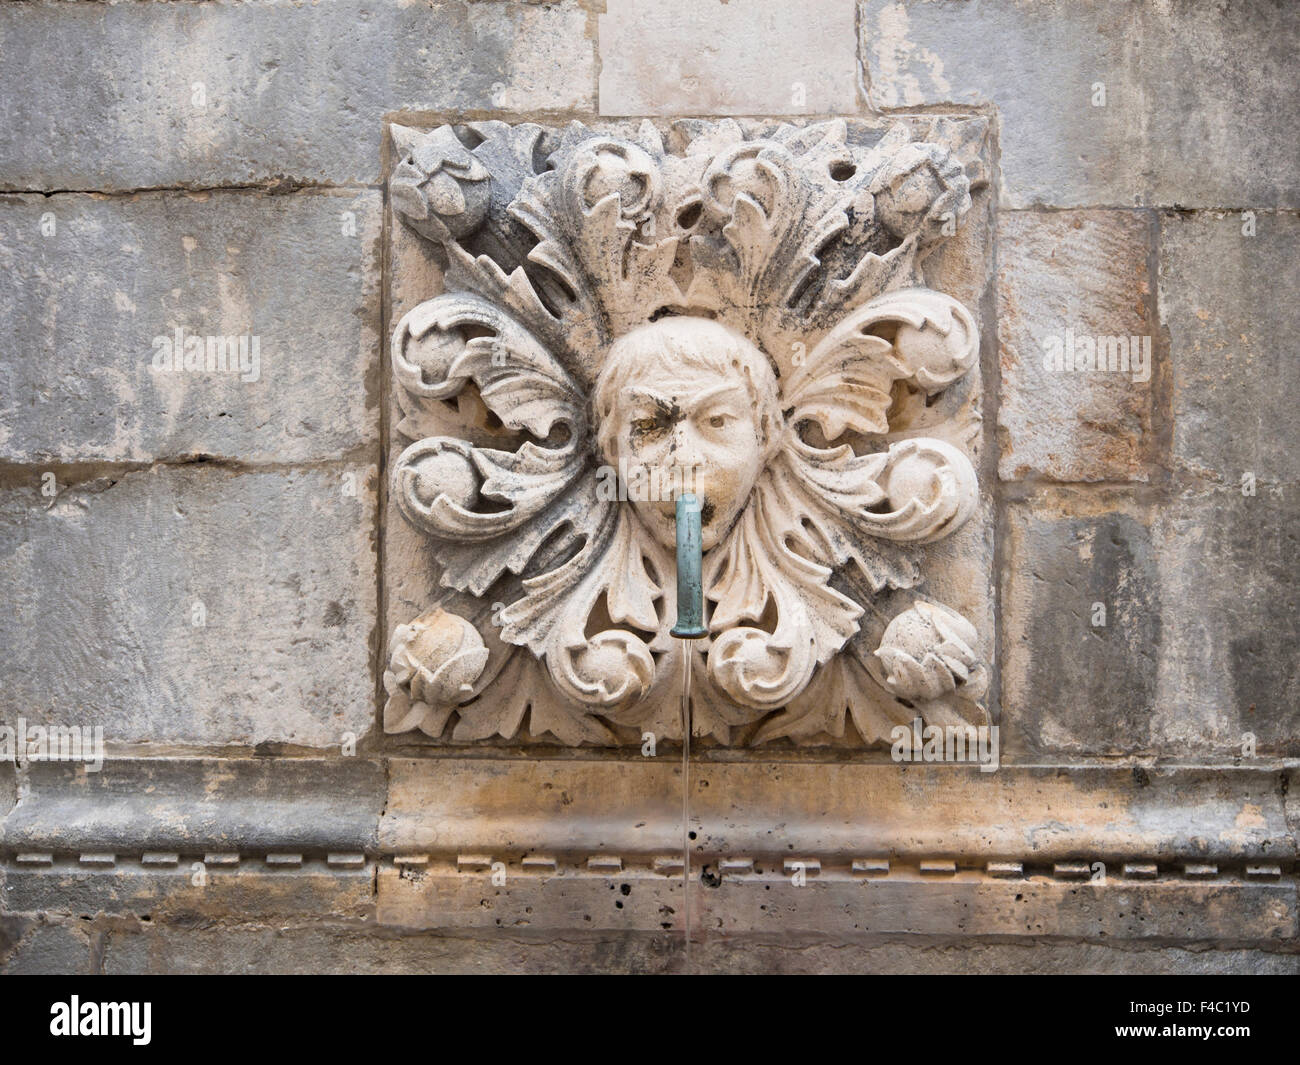 Détail de sculptures sur pierre sur la grande fontaine d'Onofrio sur le Stradun ou Placa rue de la vieille ville de Dubrovnik, Croatie Banque D'Images